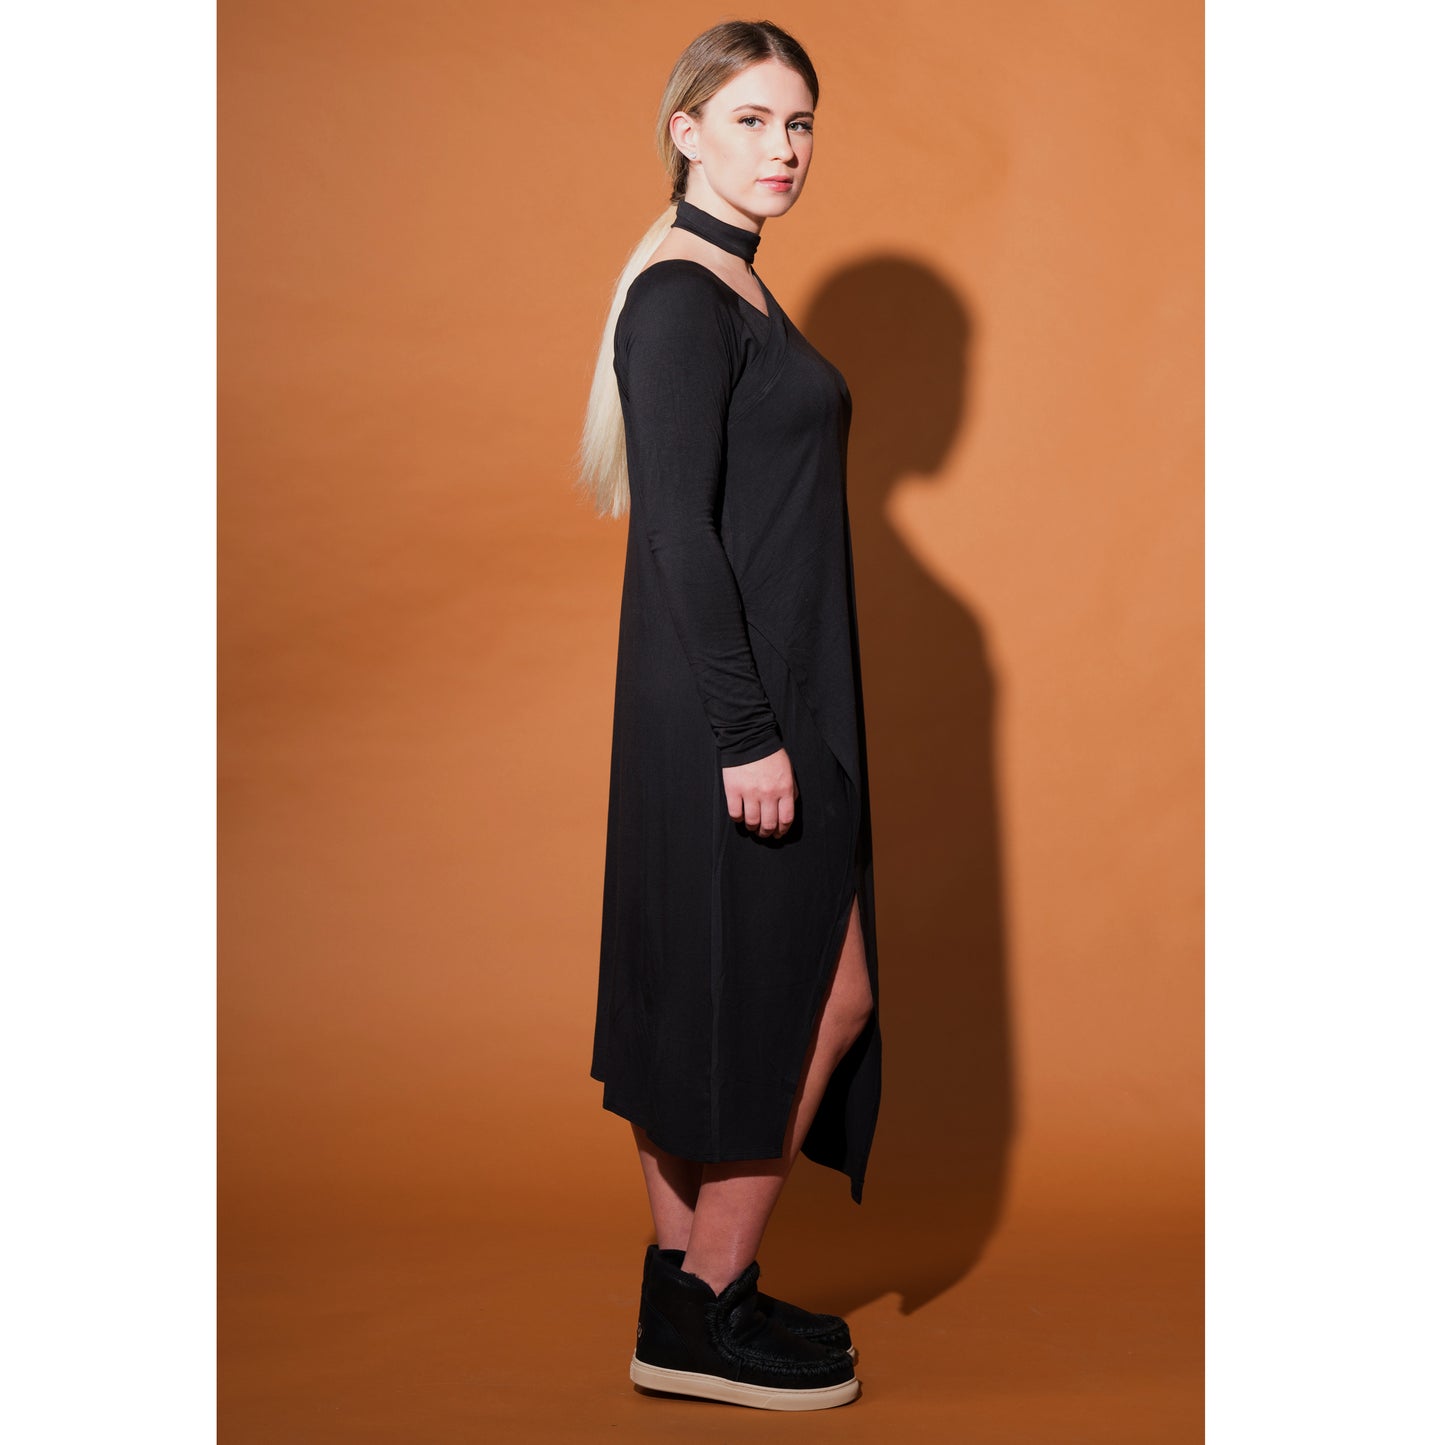 Laura Siegel Collection - Assymmetric Jersey Dress-  Black